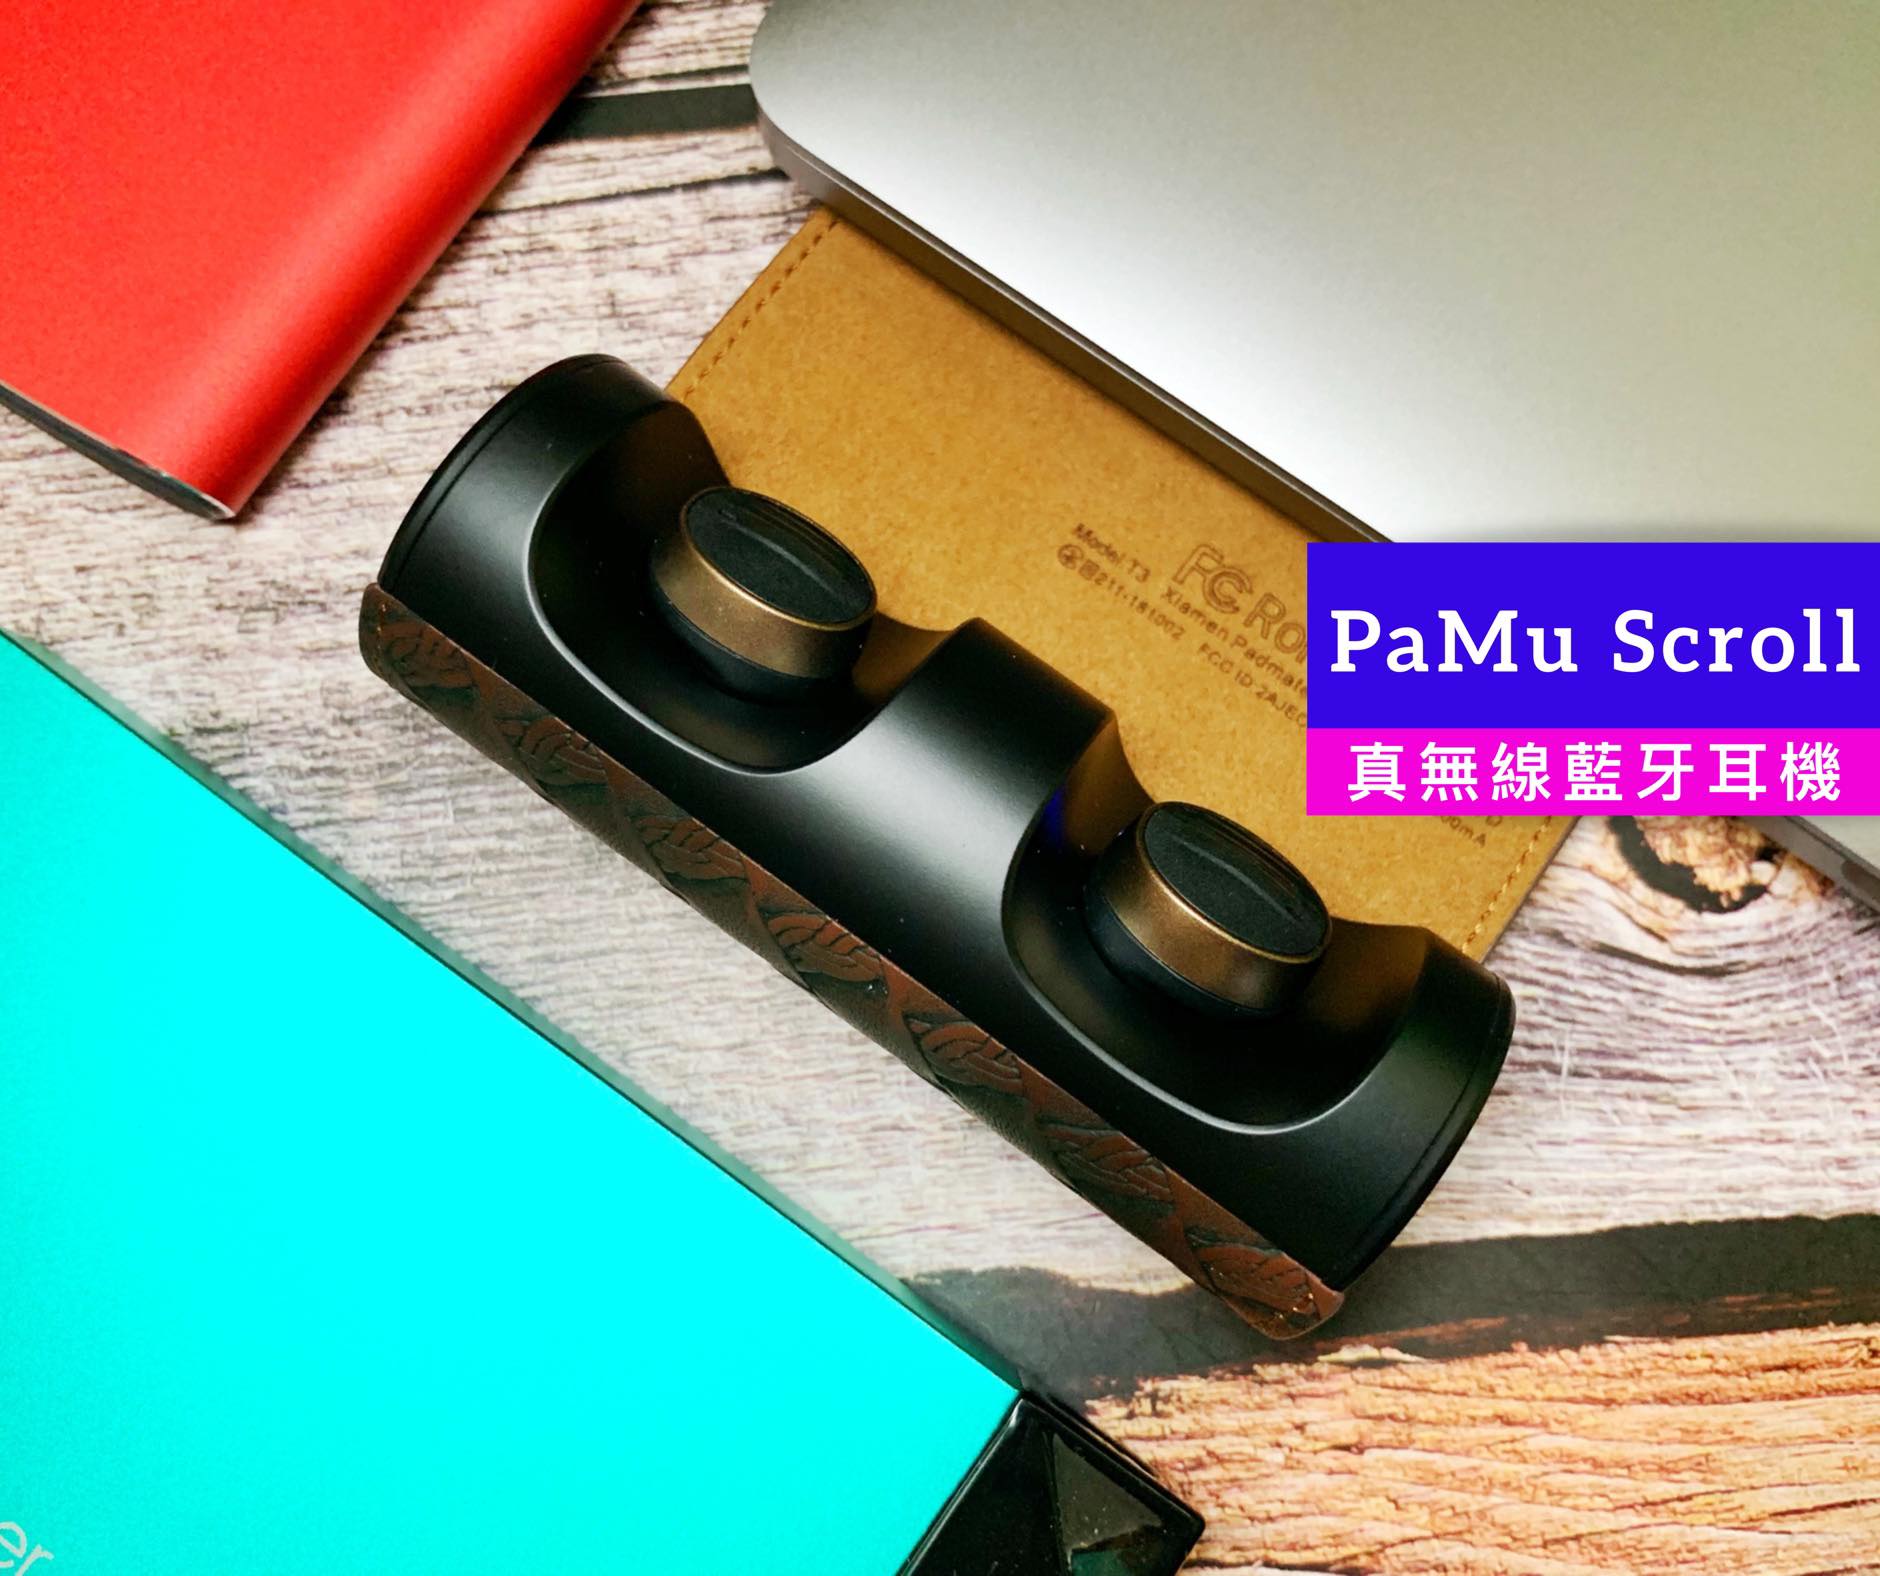 PaMu Scroll 真無線藍牙耳機 – 超低藍牙延遲與獨特外型，創下破億募資金額的藍牙耳機